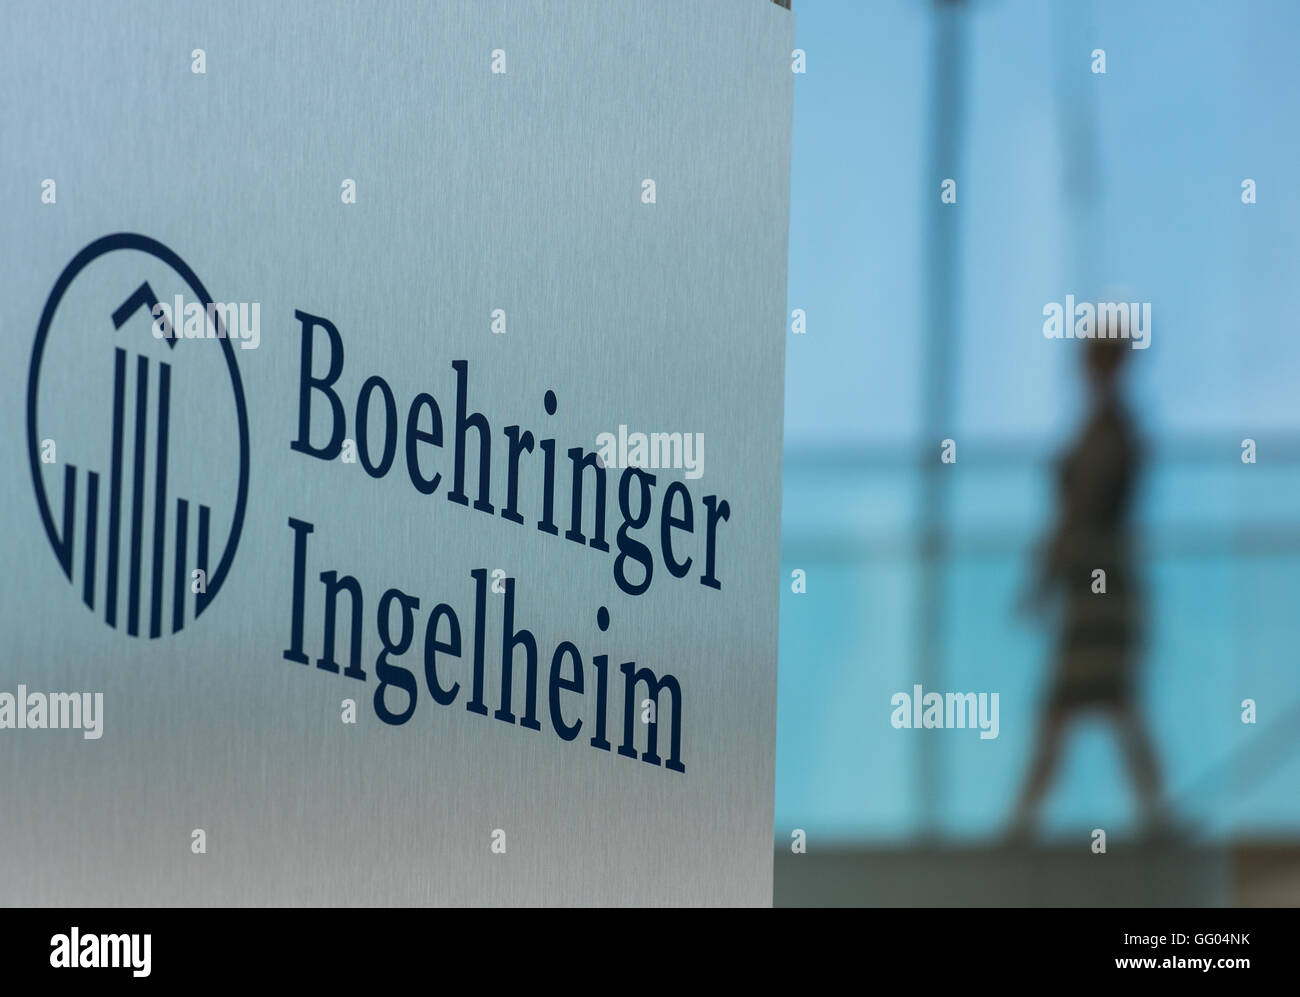 Il logo aziendale della società farmaceutica Boehringer Ingelheim può essere visto nella parte anteriore di un ponte di vetro che un dipendente è a piedi attraverso in Ingelheim am Rhein, Germania, 23 giugno 2016. Foto: Andreas Arnold/dpa Foto Stock